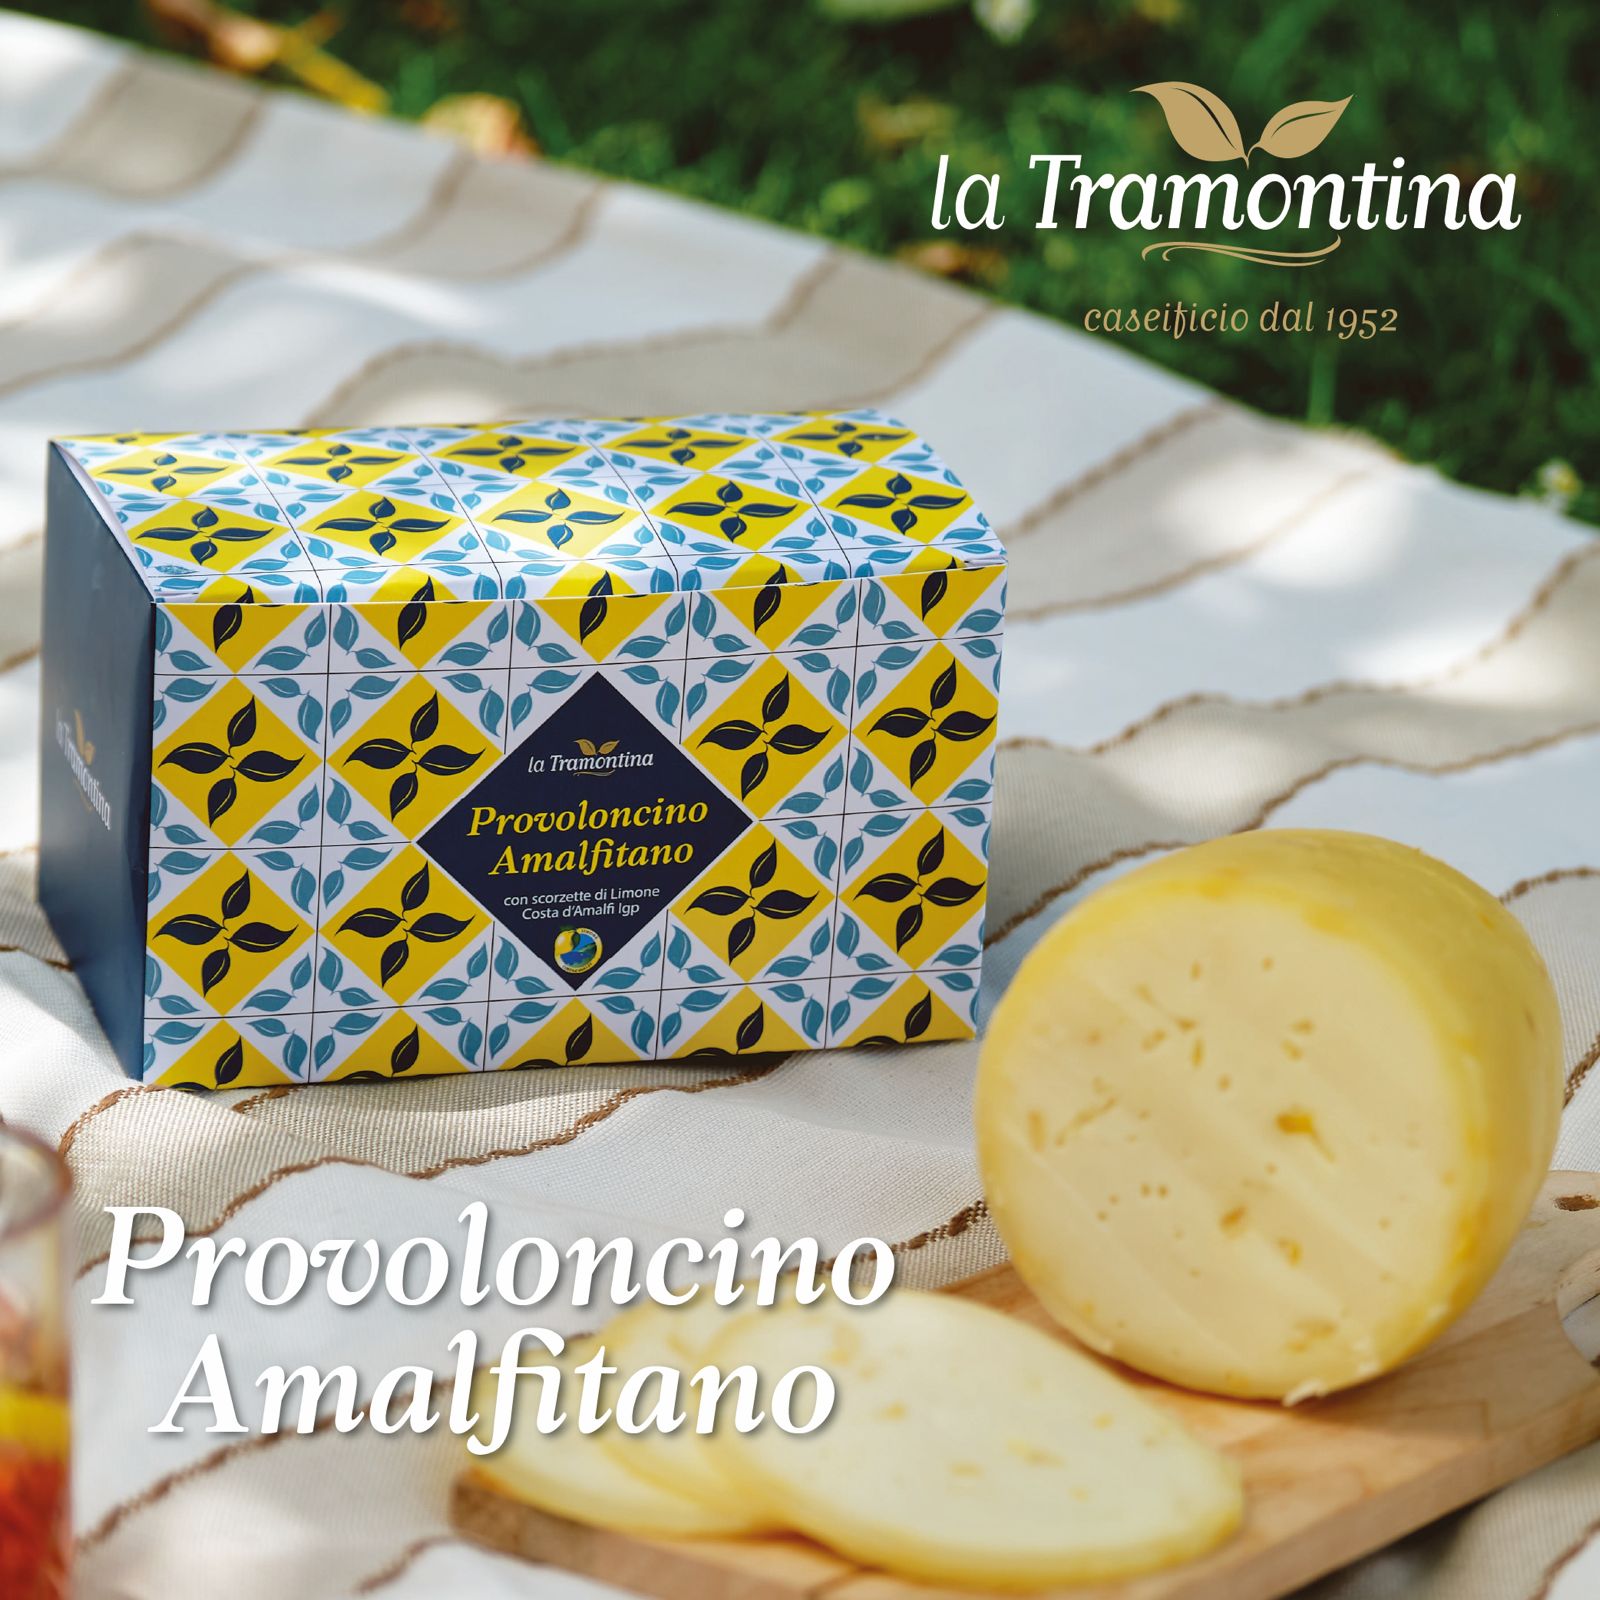 Provoloncino Amalfitano, con scorzette di Limone Costa d'Amalfi IGP firmato 